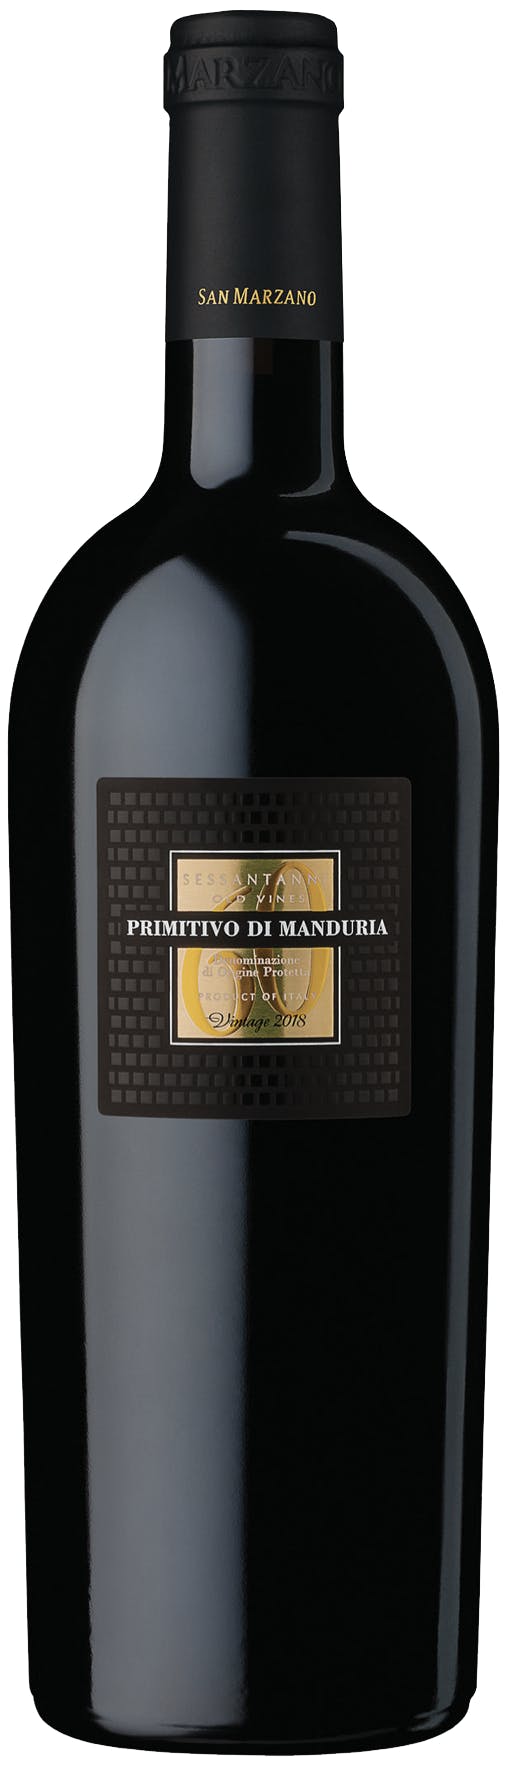 Cantine San Marzano Primitivo 2018 di Warehouse Wine Liquor Sessantanni - & 750ml Manduria